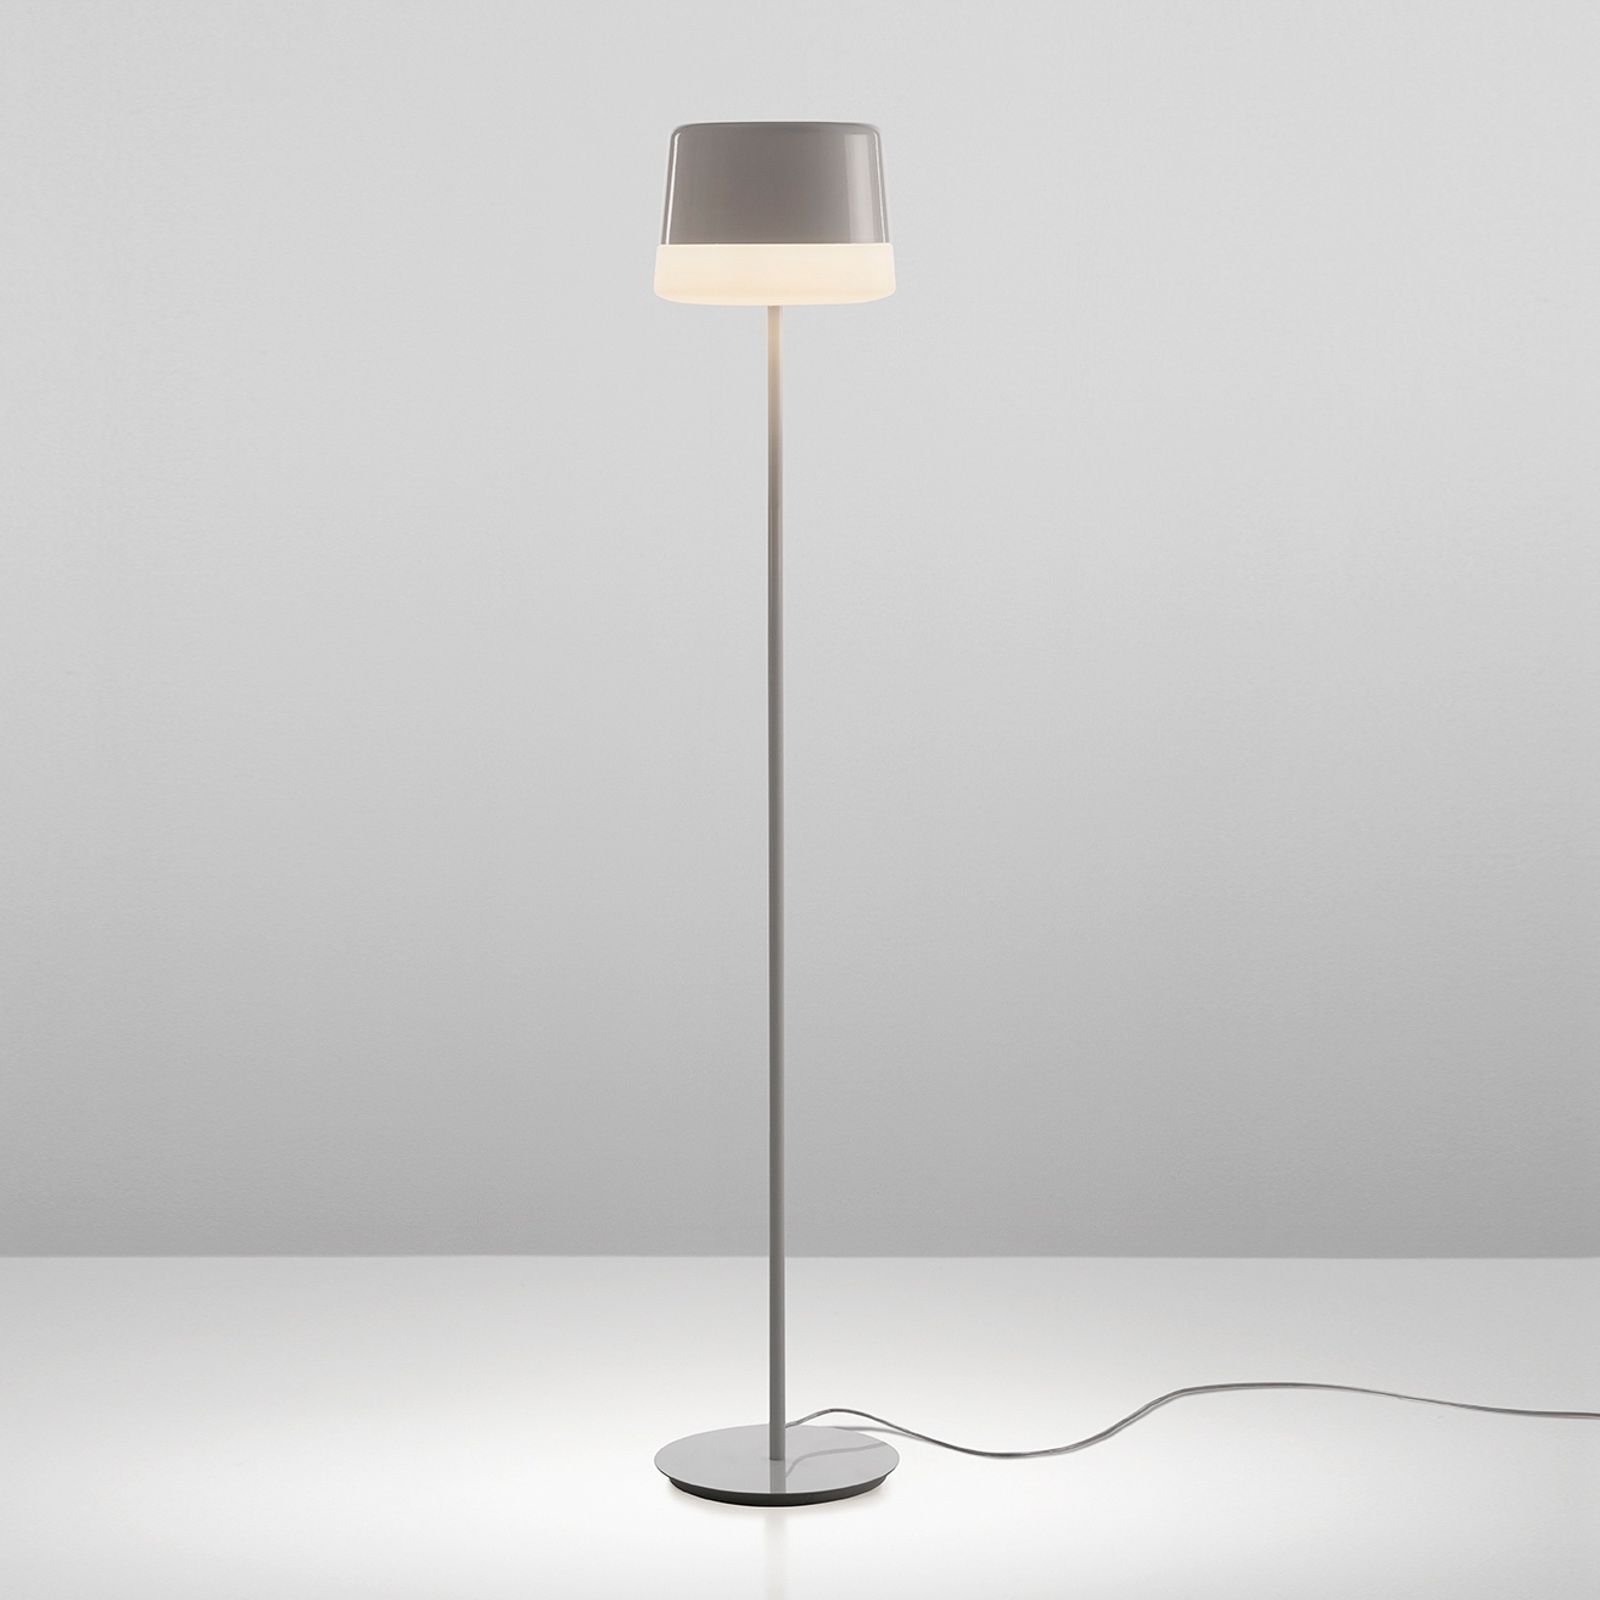 Prandina Gift F10 floor lamp, white